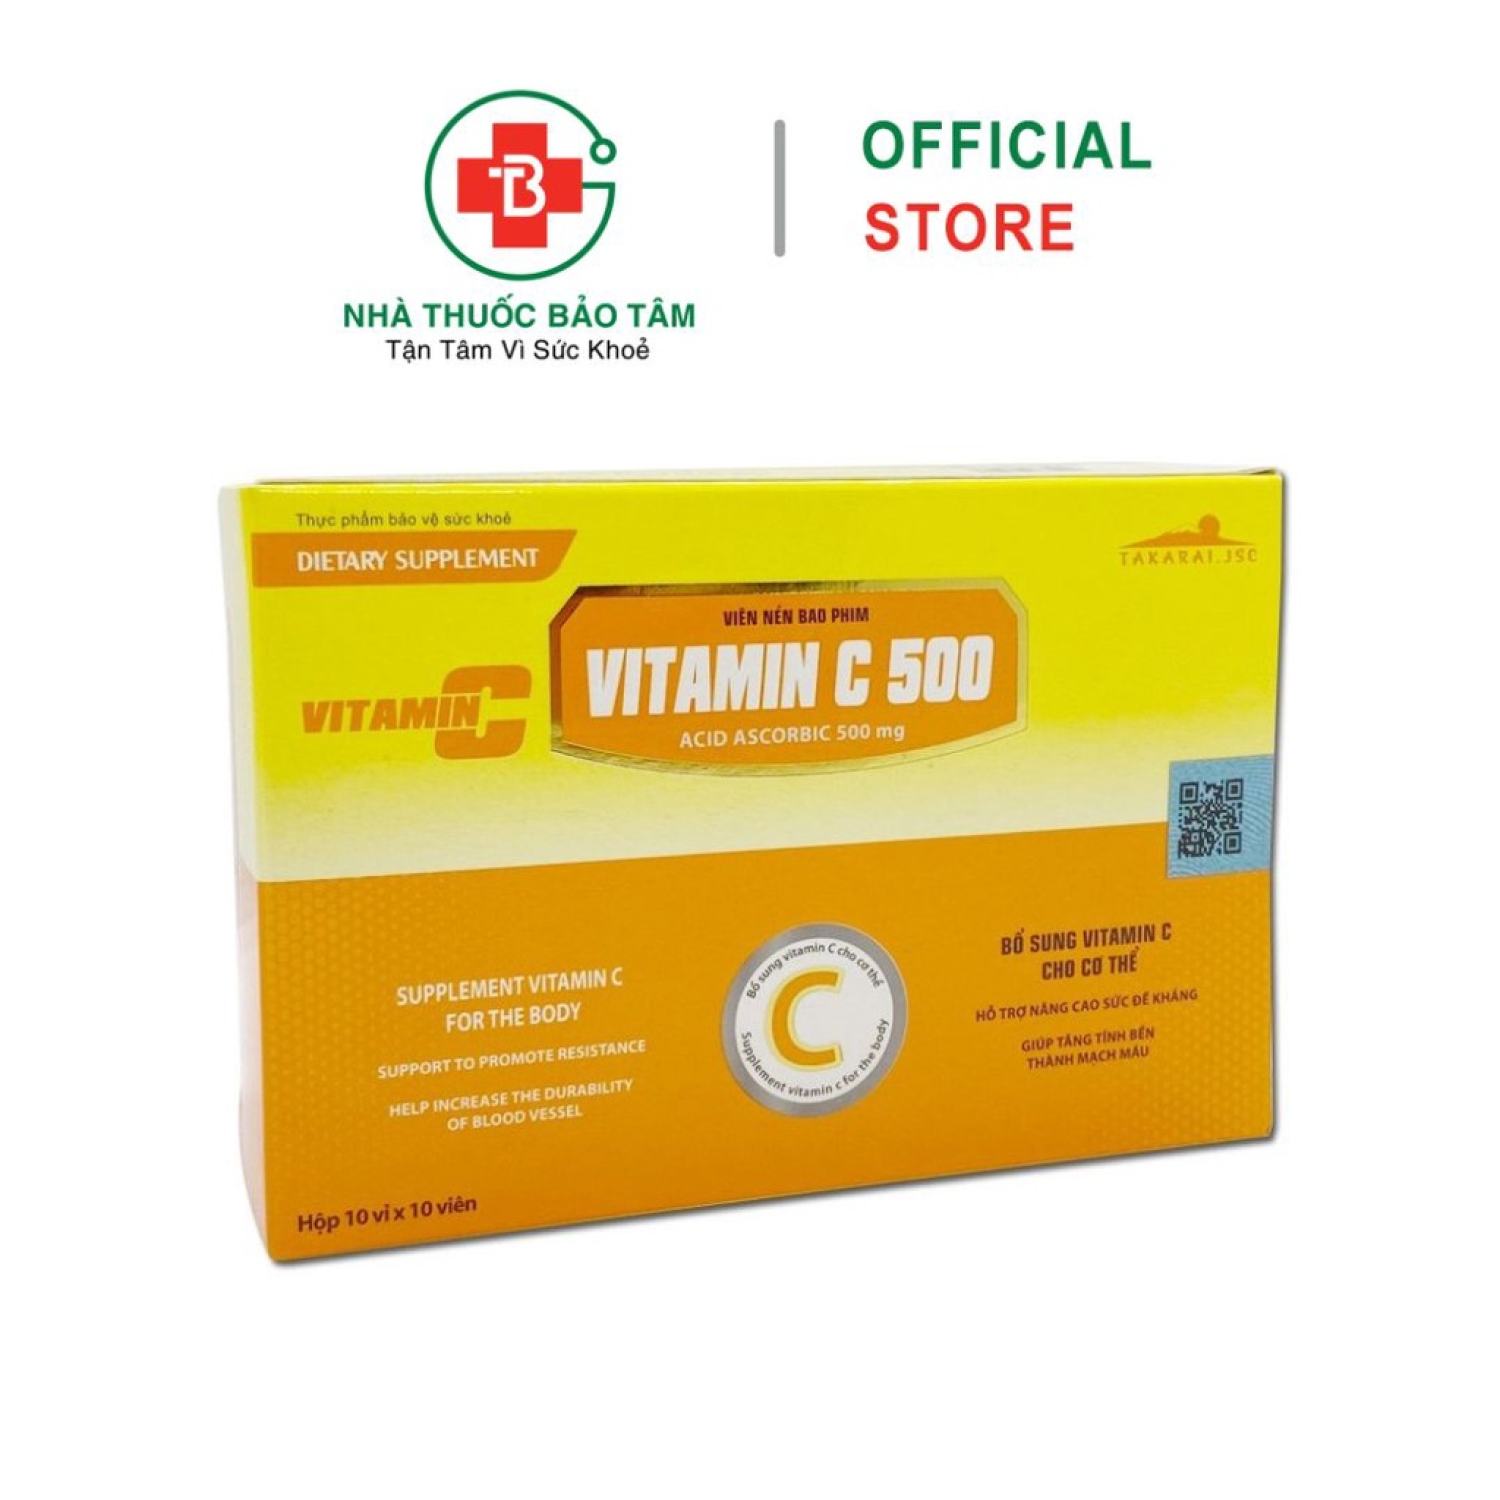 Viên uống VITAMIN C 500 tăng cường sức đề kháng, tăng sức khỏe - 100 viên